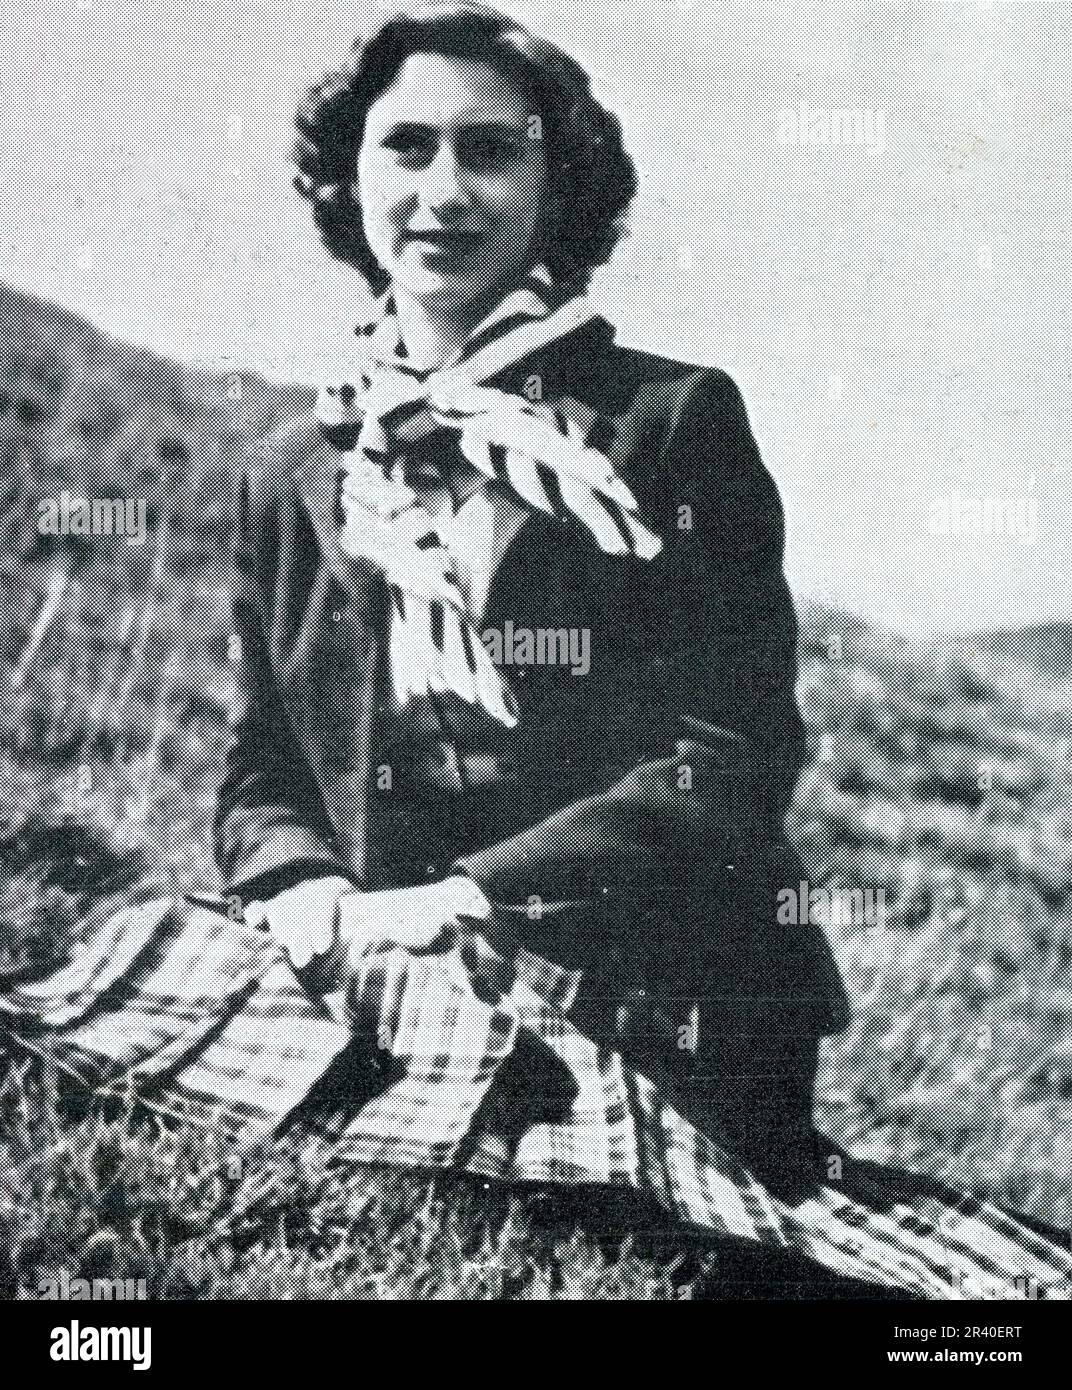 Una rilassata fotografia informale di sua Principessa Margared, che indossa un kilt, sulle brughiere nei pressi di Balmoral, Scozia, nell'agosto del 1951 pochi mesi prima della morte precoce del Re nel febbraio del 1952, di soli 56 anni. La famiglia reale spesso ha avuto picnincs sui fossati quando fuori tiro. Questa fotografia è stata scattata dal conte di Dalkeith, che in seguito divenne il duca di Buccleuch del 9th. Scozia, Regno Unito Foto Stock